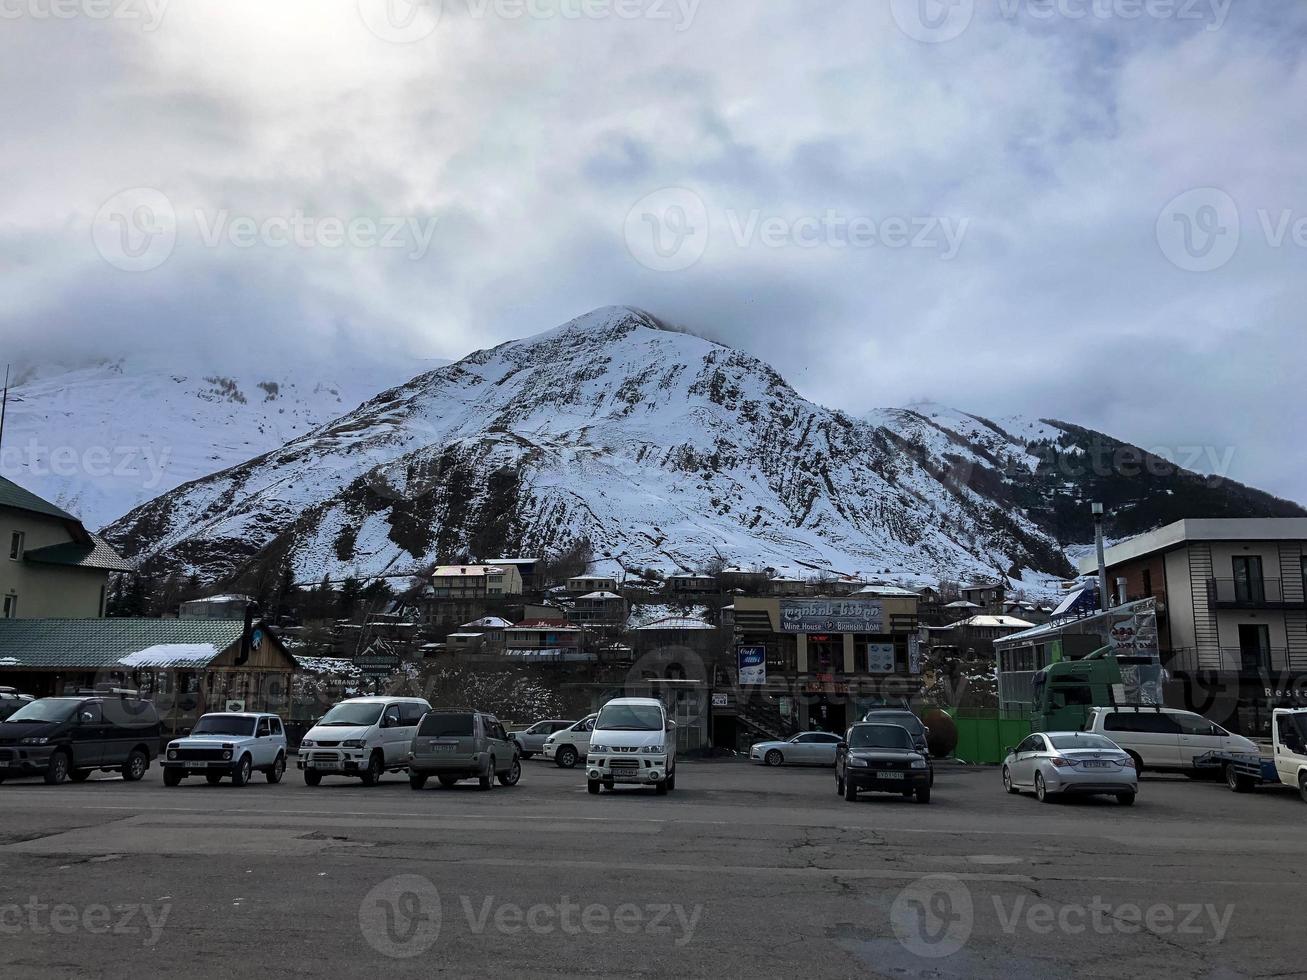 estacionamento e casas de pedra, edifícios, lojas, reabastecimento em um belo resort de inverno de montanha com picos de montanhas altas e rochas cobertas de neve contra um céu azul. Geórgia, Tbilisi, 17 de abril de 2019 foto